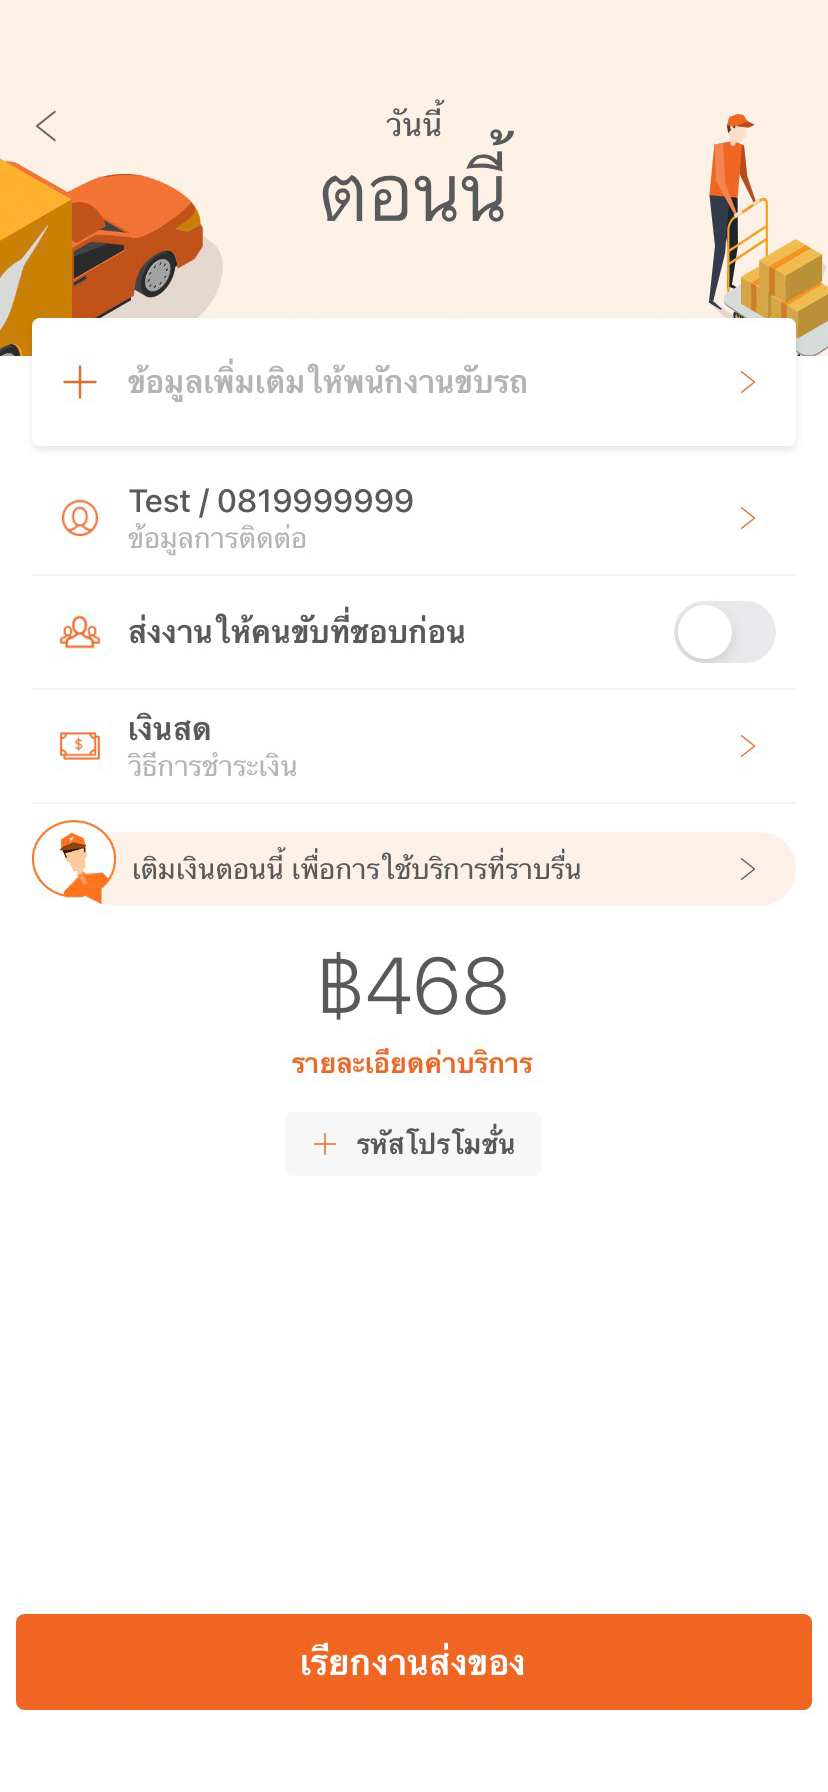 TH_Thai_app features_02